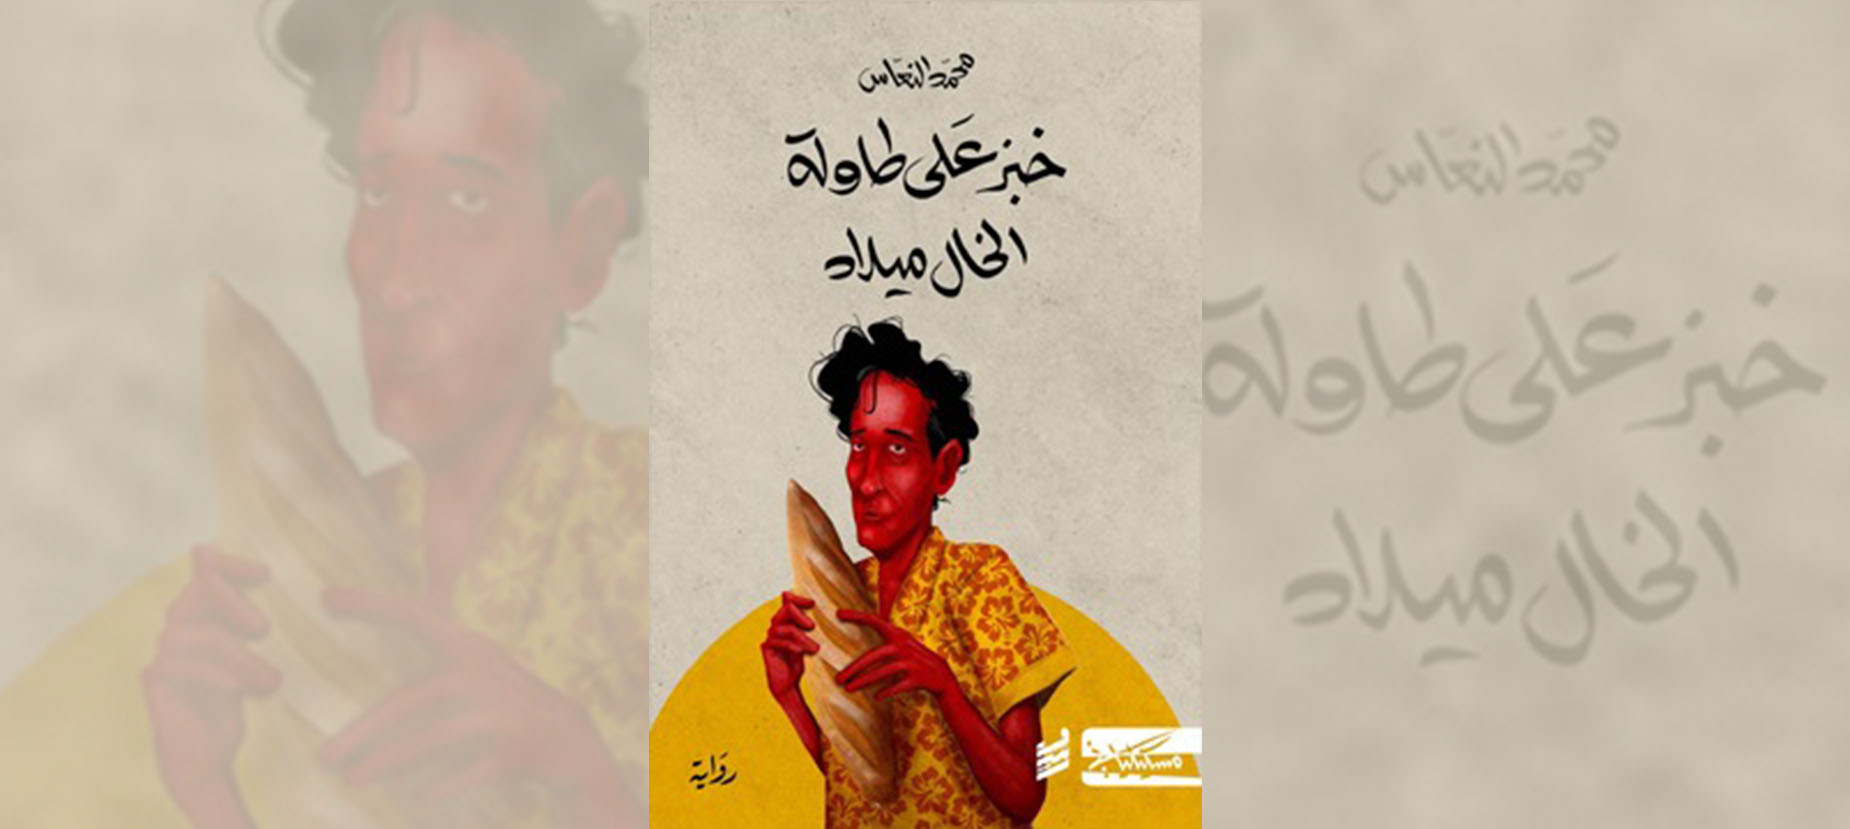 فوز رواية «خبز على طاولة الخال ميلاد» بالجائزة العالمية للرواية العربية